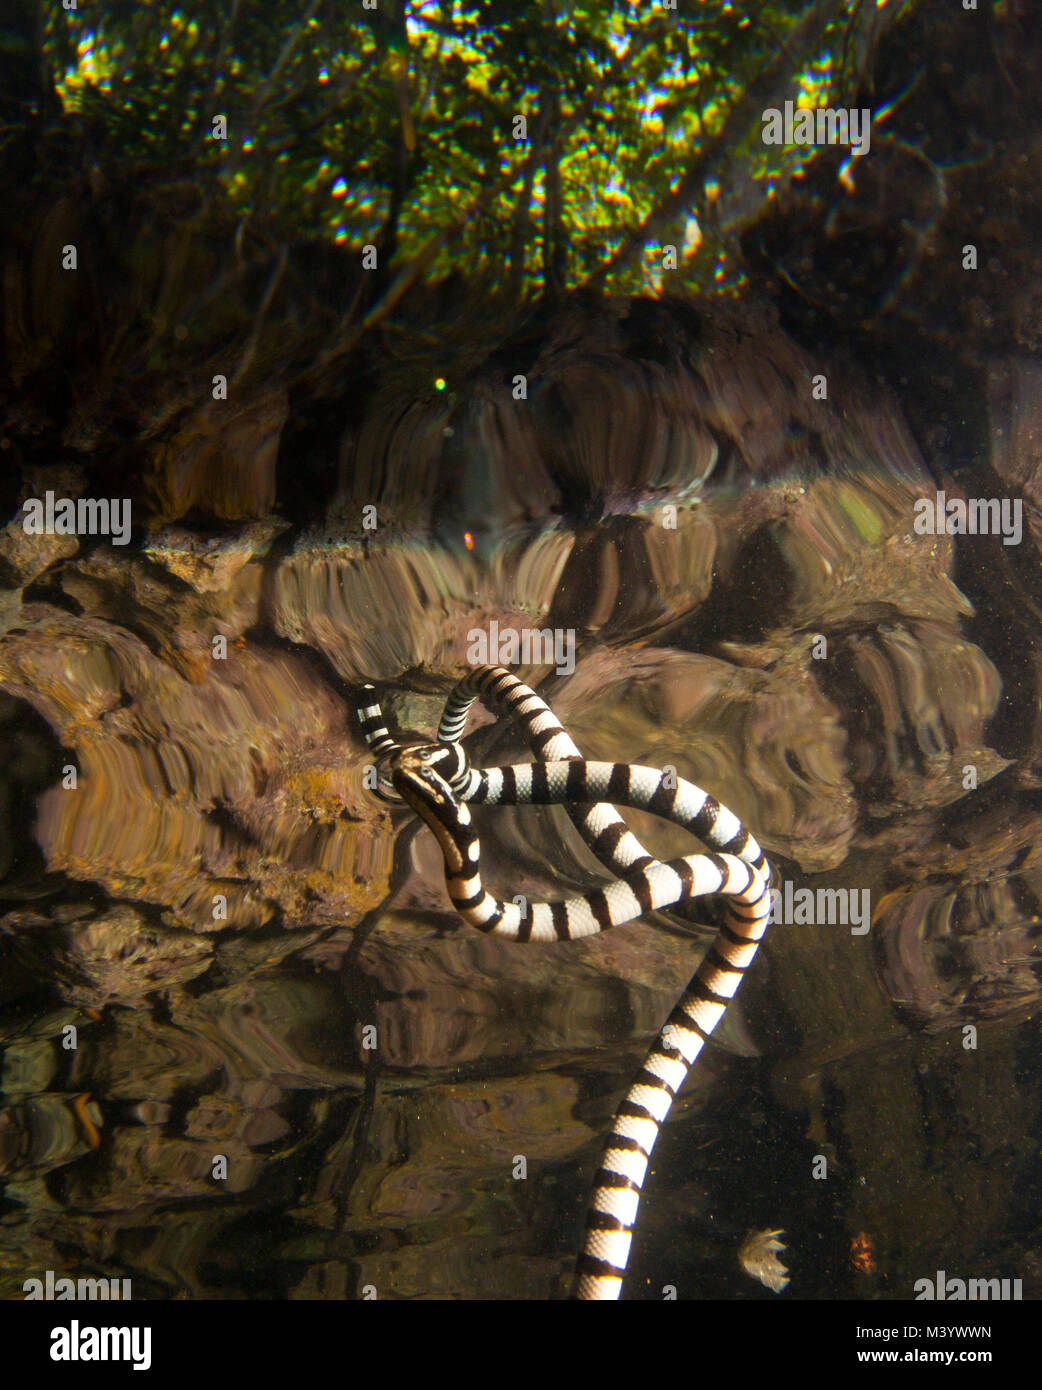 Un serpent de mer qui se reflète sur la surface de l'eau Banque D'Images